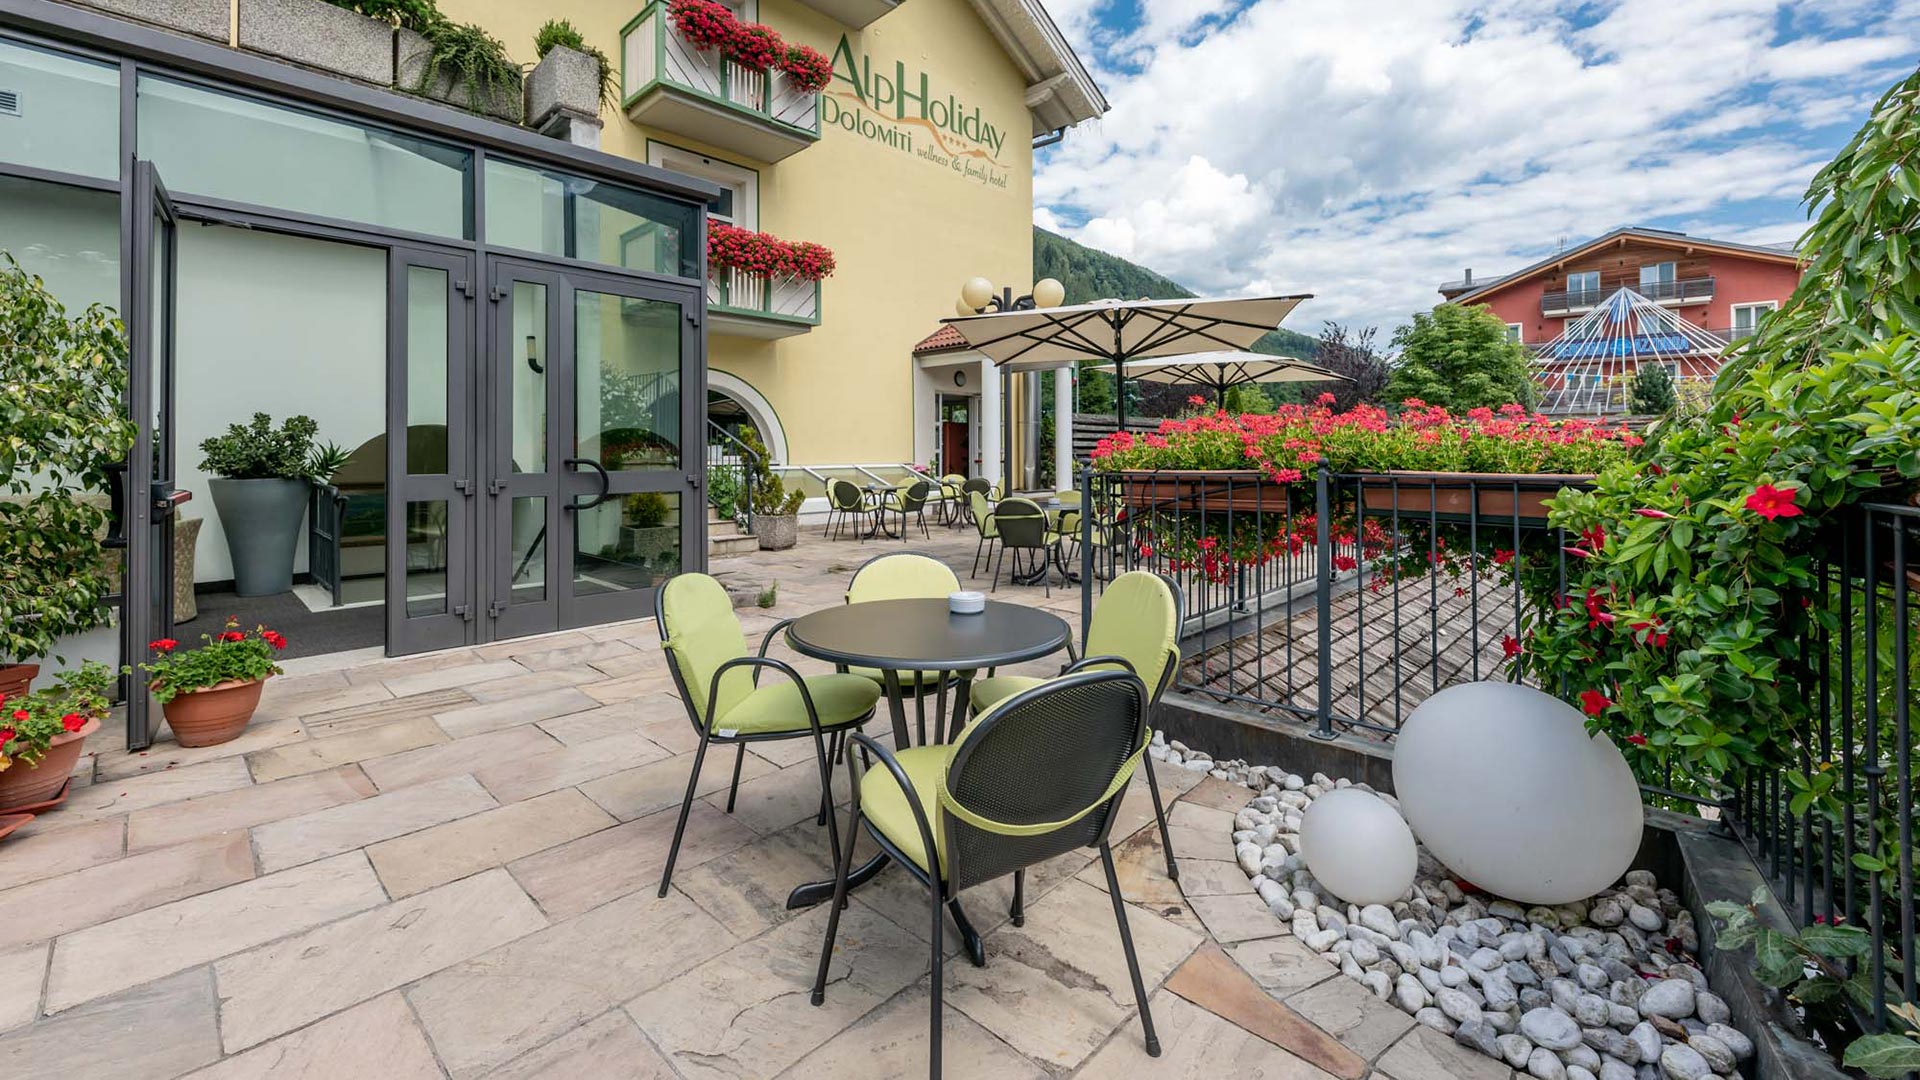 L'Hotel Family AlpHoliday con il suo bar terrazza offre panorami mozzafiato dell'incantevole Val di Sole che fanno bene al cuore.